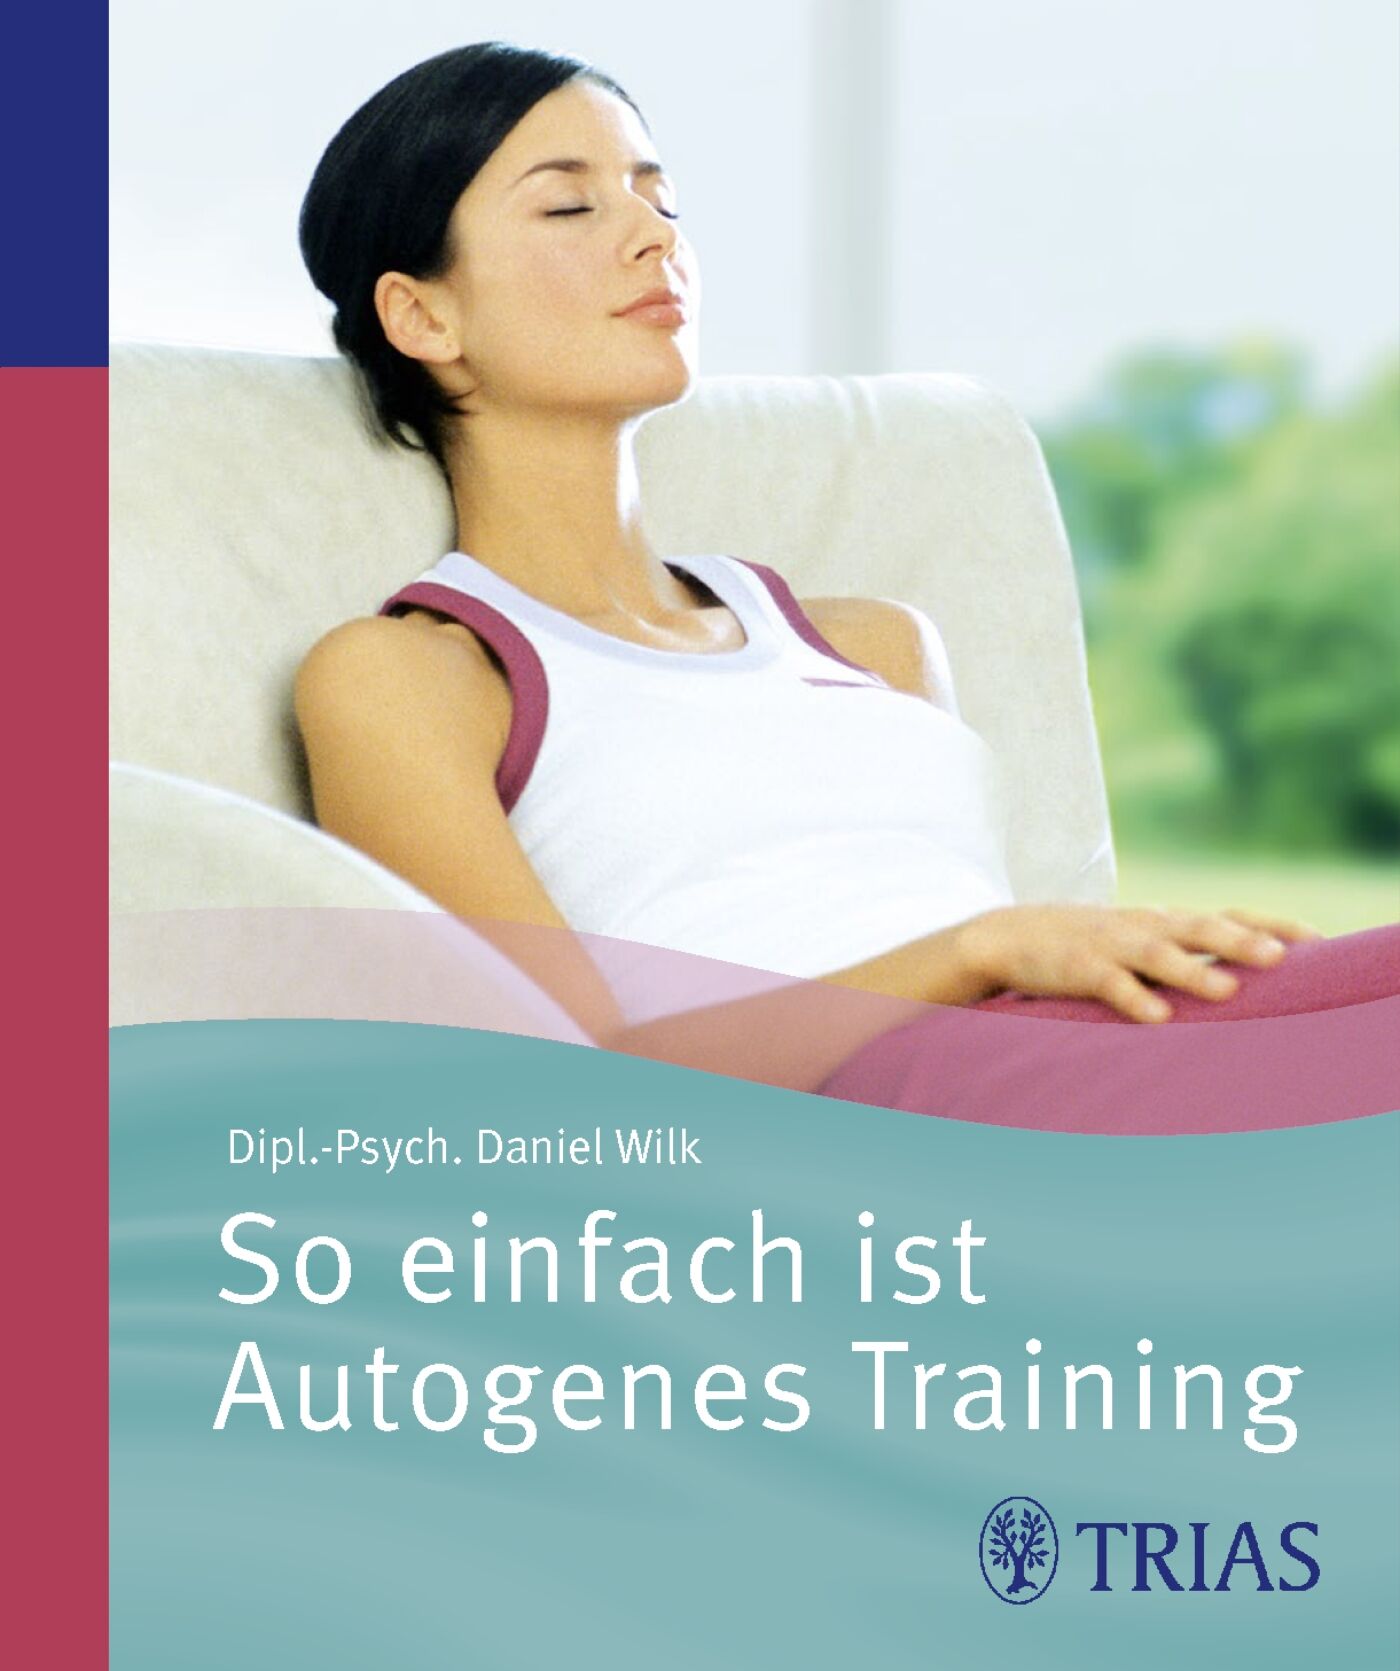 So einfach ist Autogenes Training, 9783830423546